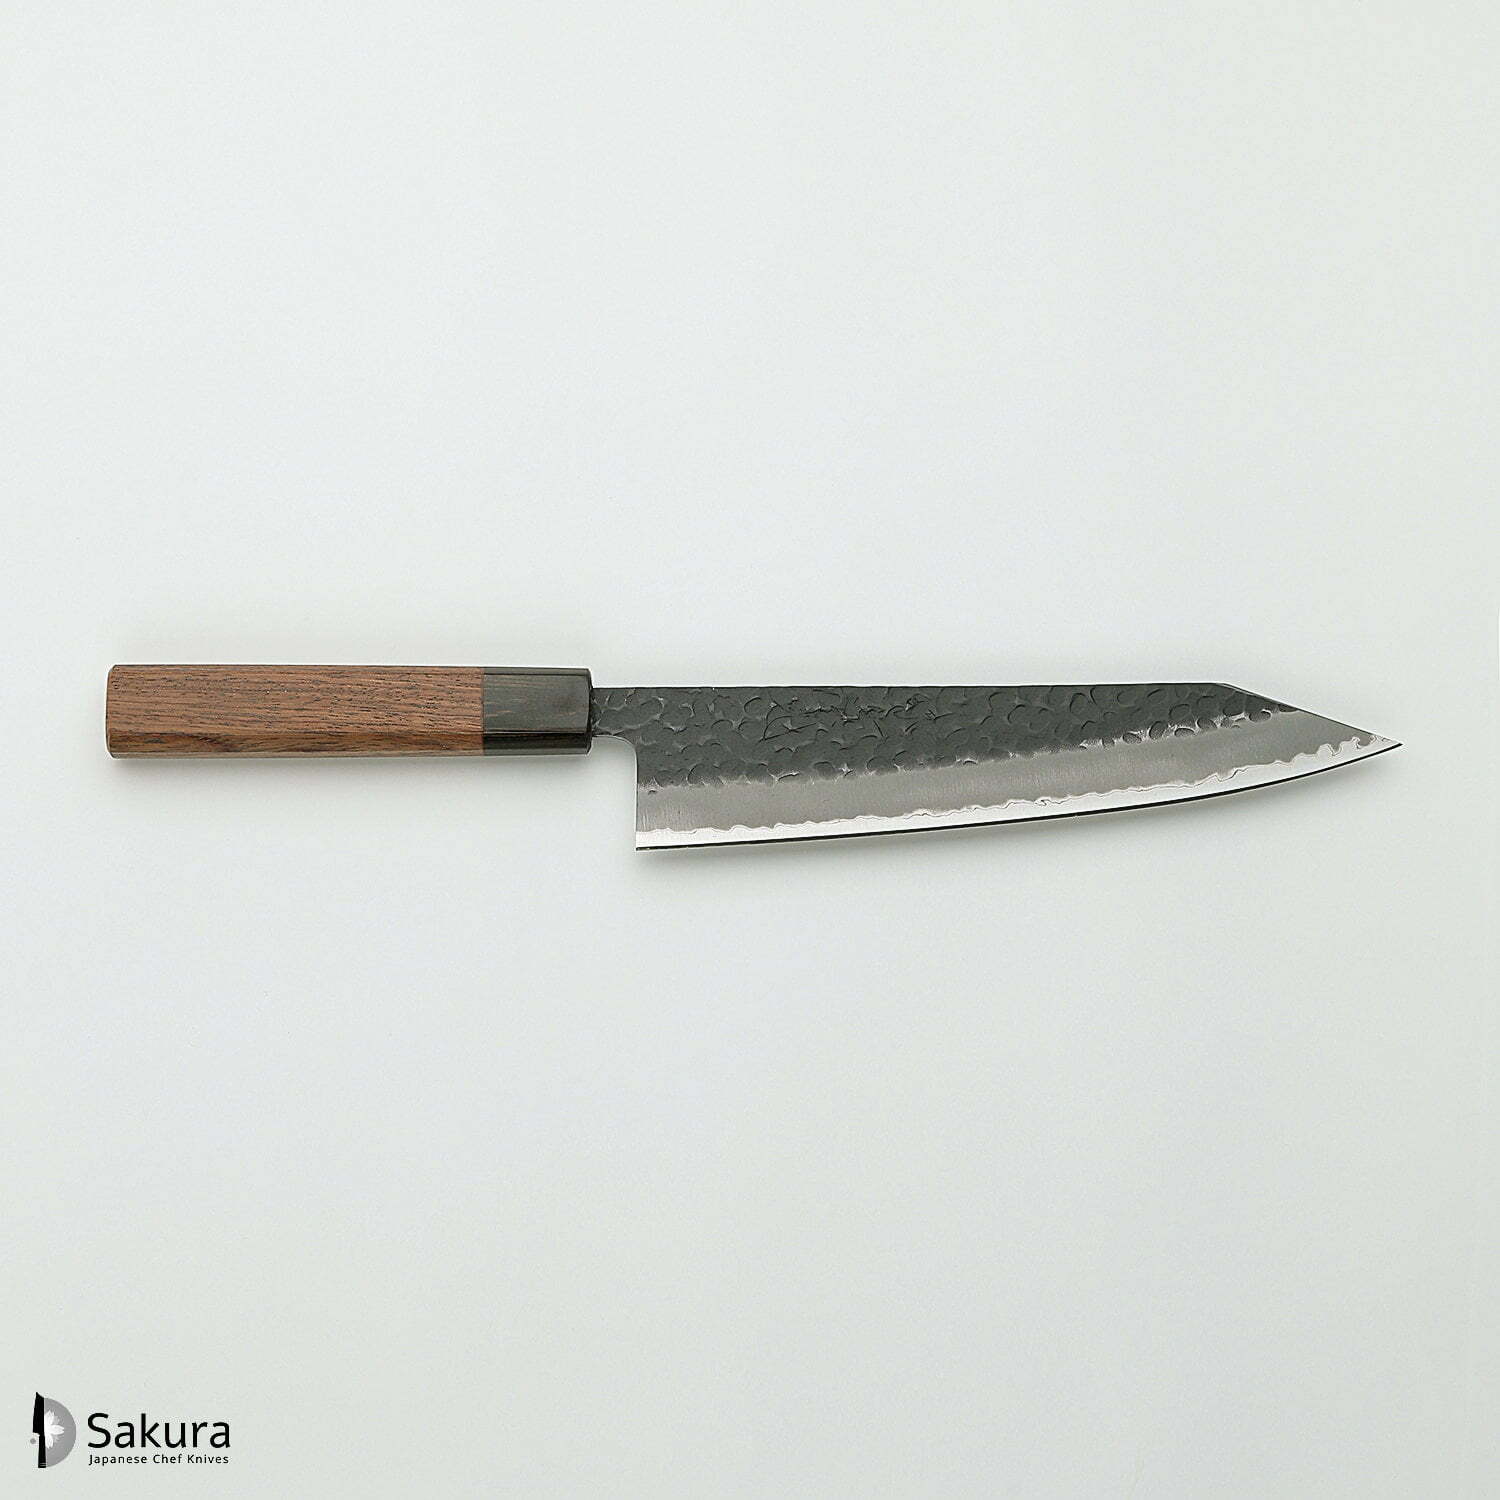 סכין שף רב-תכליתית קִּירִיצוּקֶה גִּיוּטוֹ 200מ״מ מחוזקת 3 שכבות: פלדת פחמן יפנית מתקדמת מסוג Aogami Super עטופה פלדת אל-חלד גימור קורואיצ׳י שחור עם ריקוע פטיש ג׳יקו סאקאיי יפן